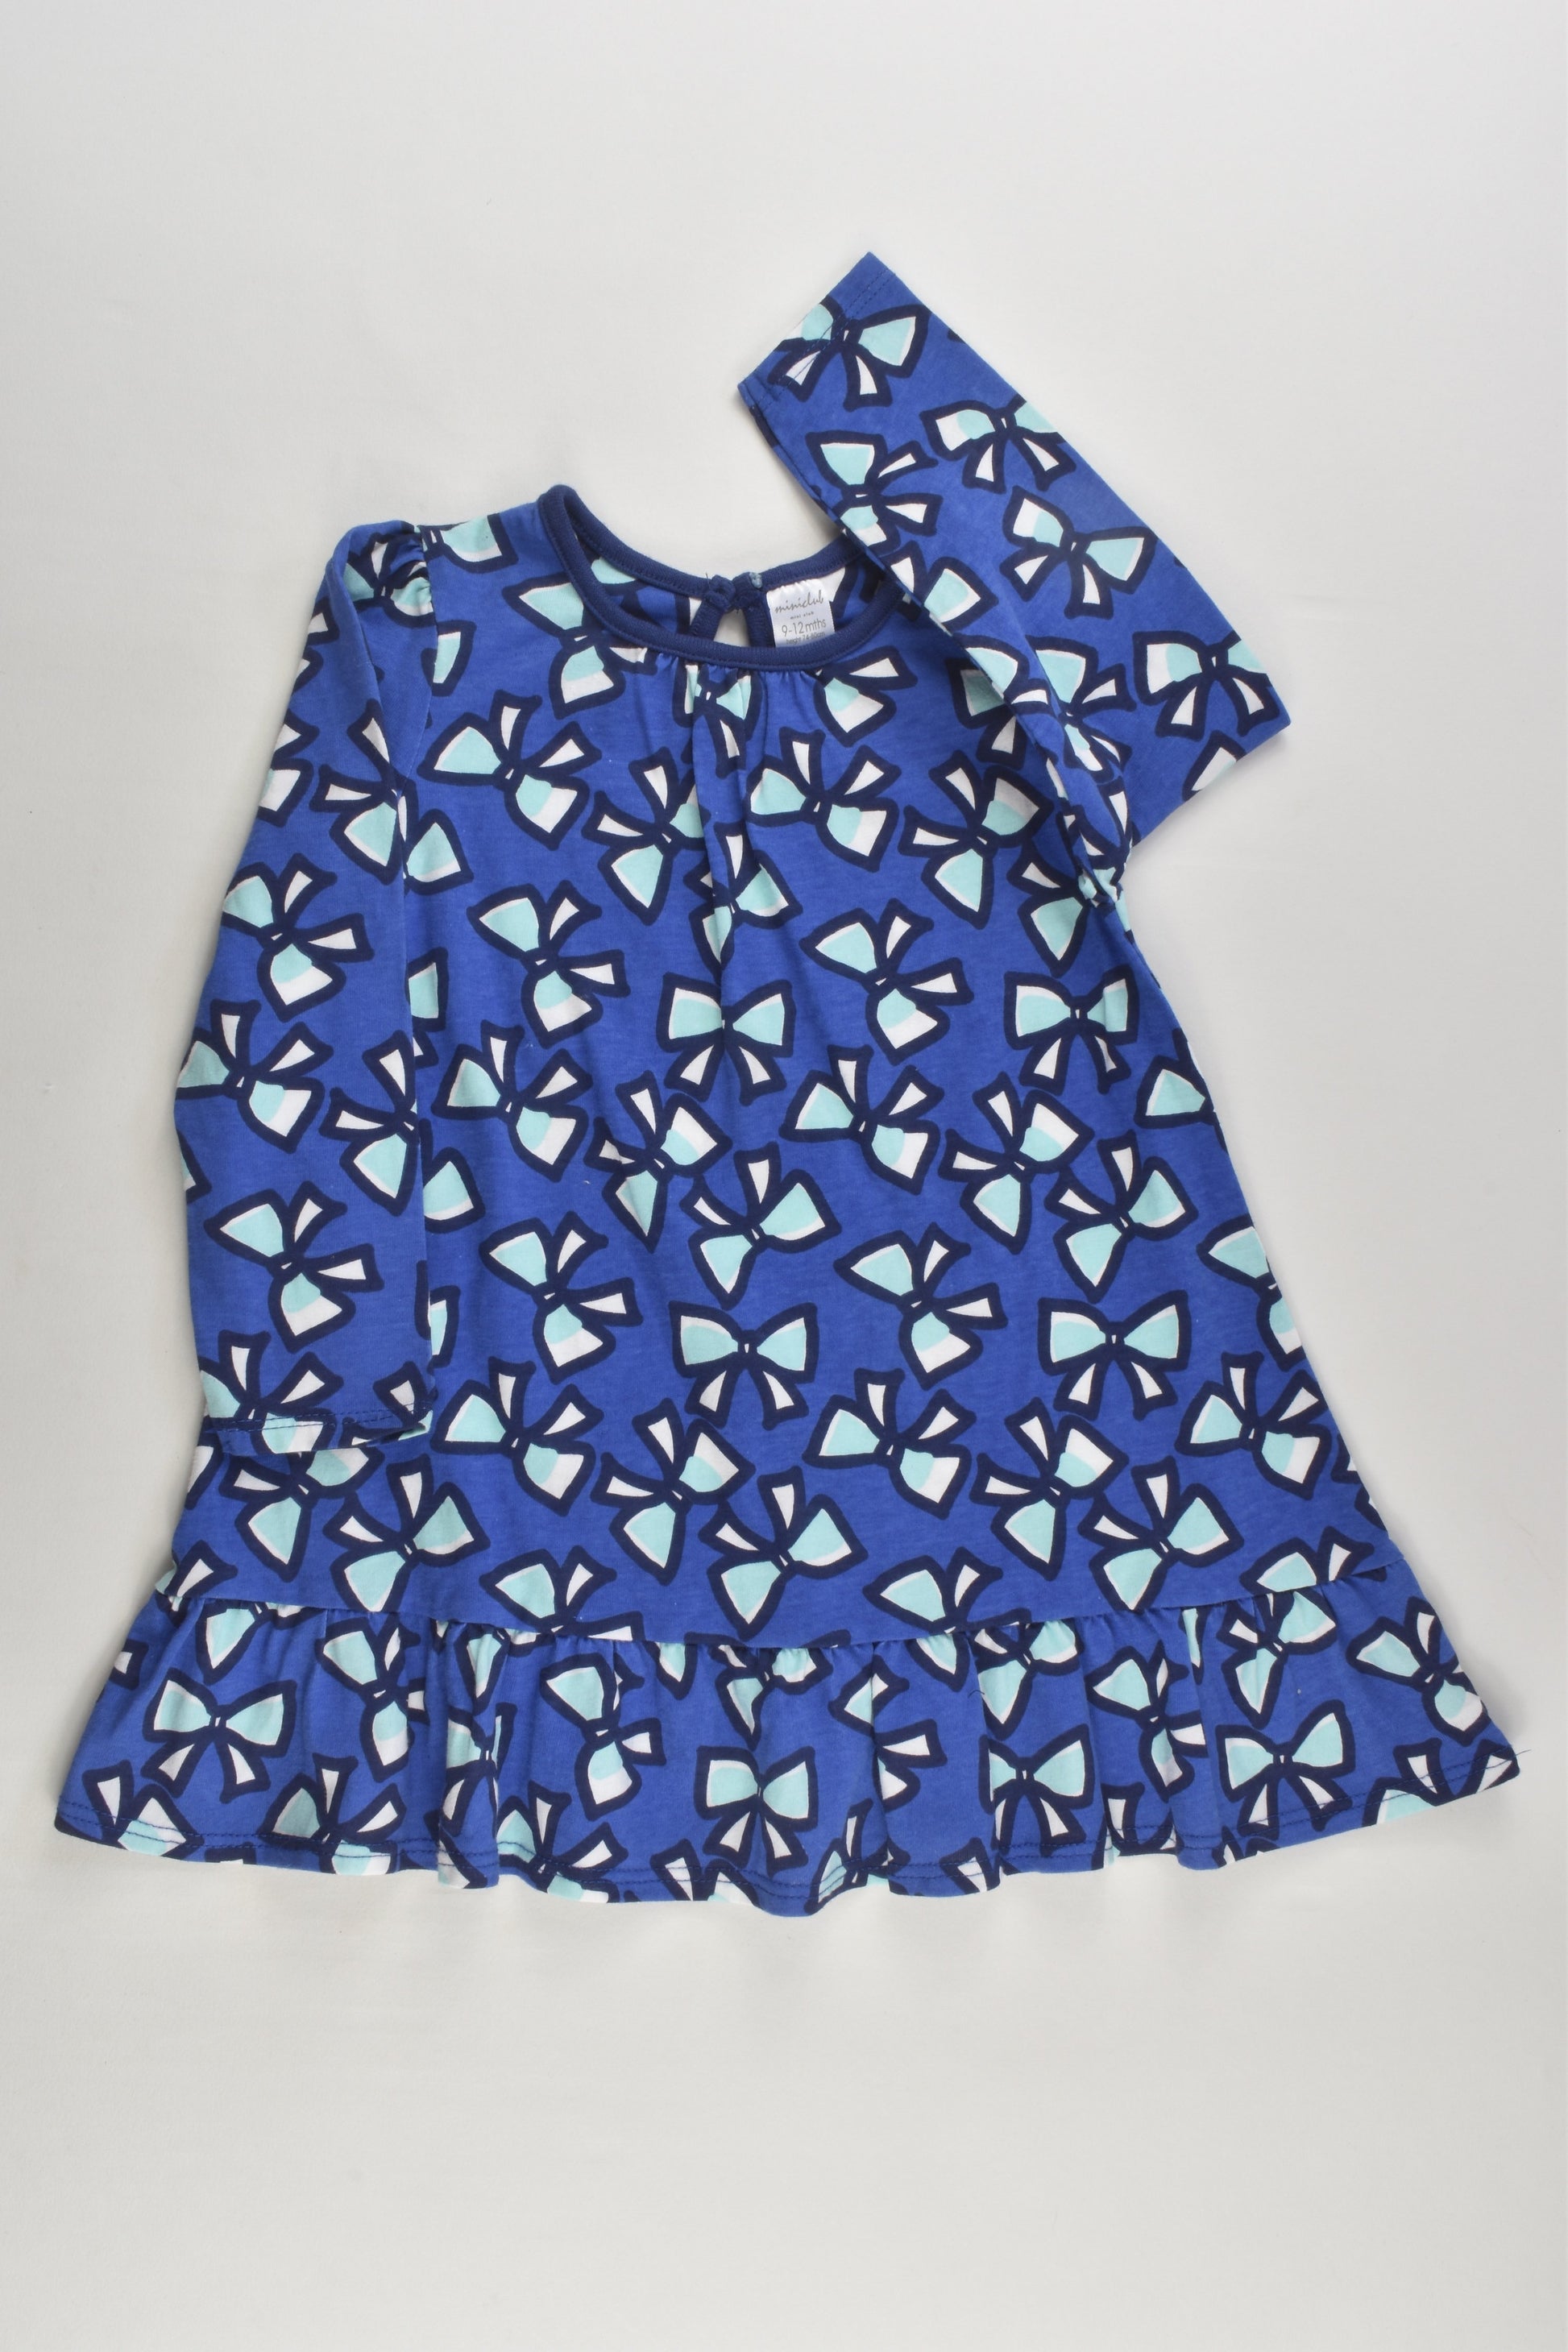 Mini Club Size 0 (9-12 months) Bows Dress